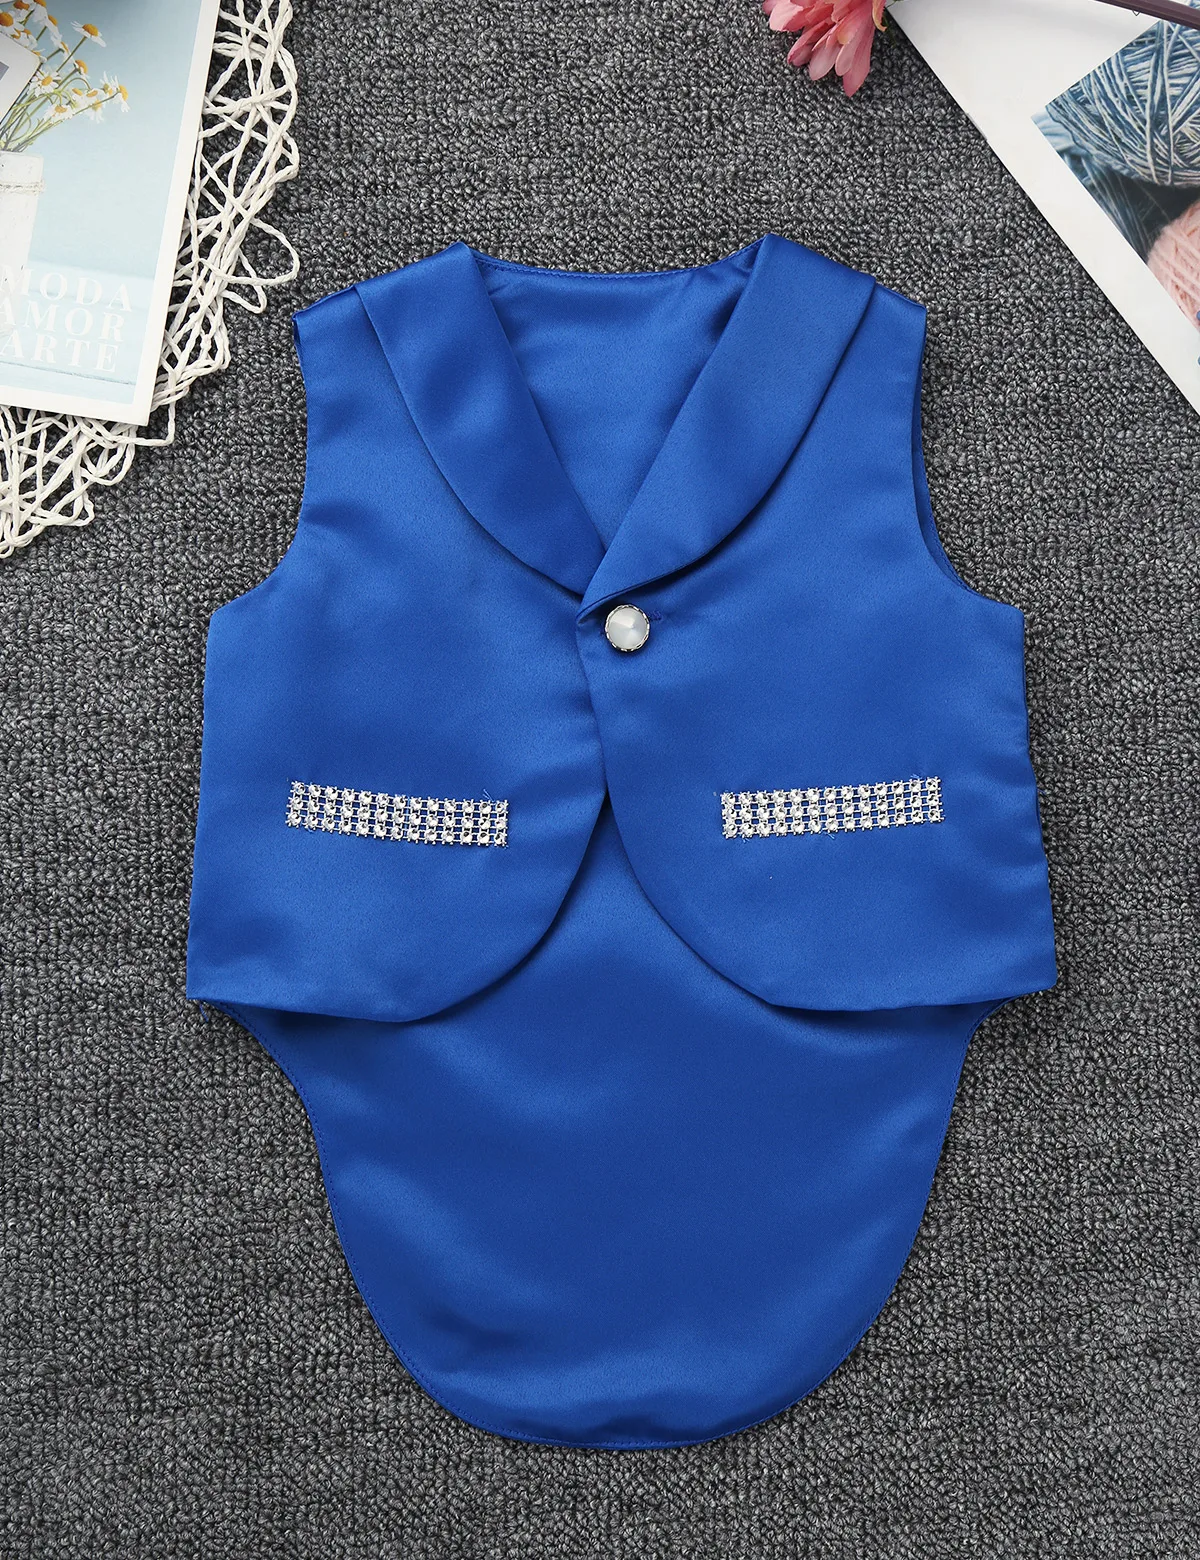 Одежда для новорожденных мальчиков в джентльменском стиле; комбинезон с длинными рукавами и галстуком-бабочкой; комплект с жилетом; Одежда для младенцев; одежда для малышей